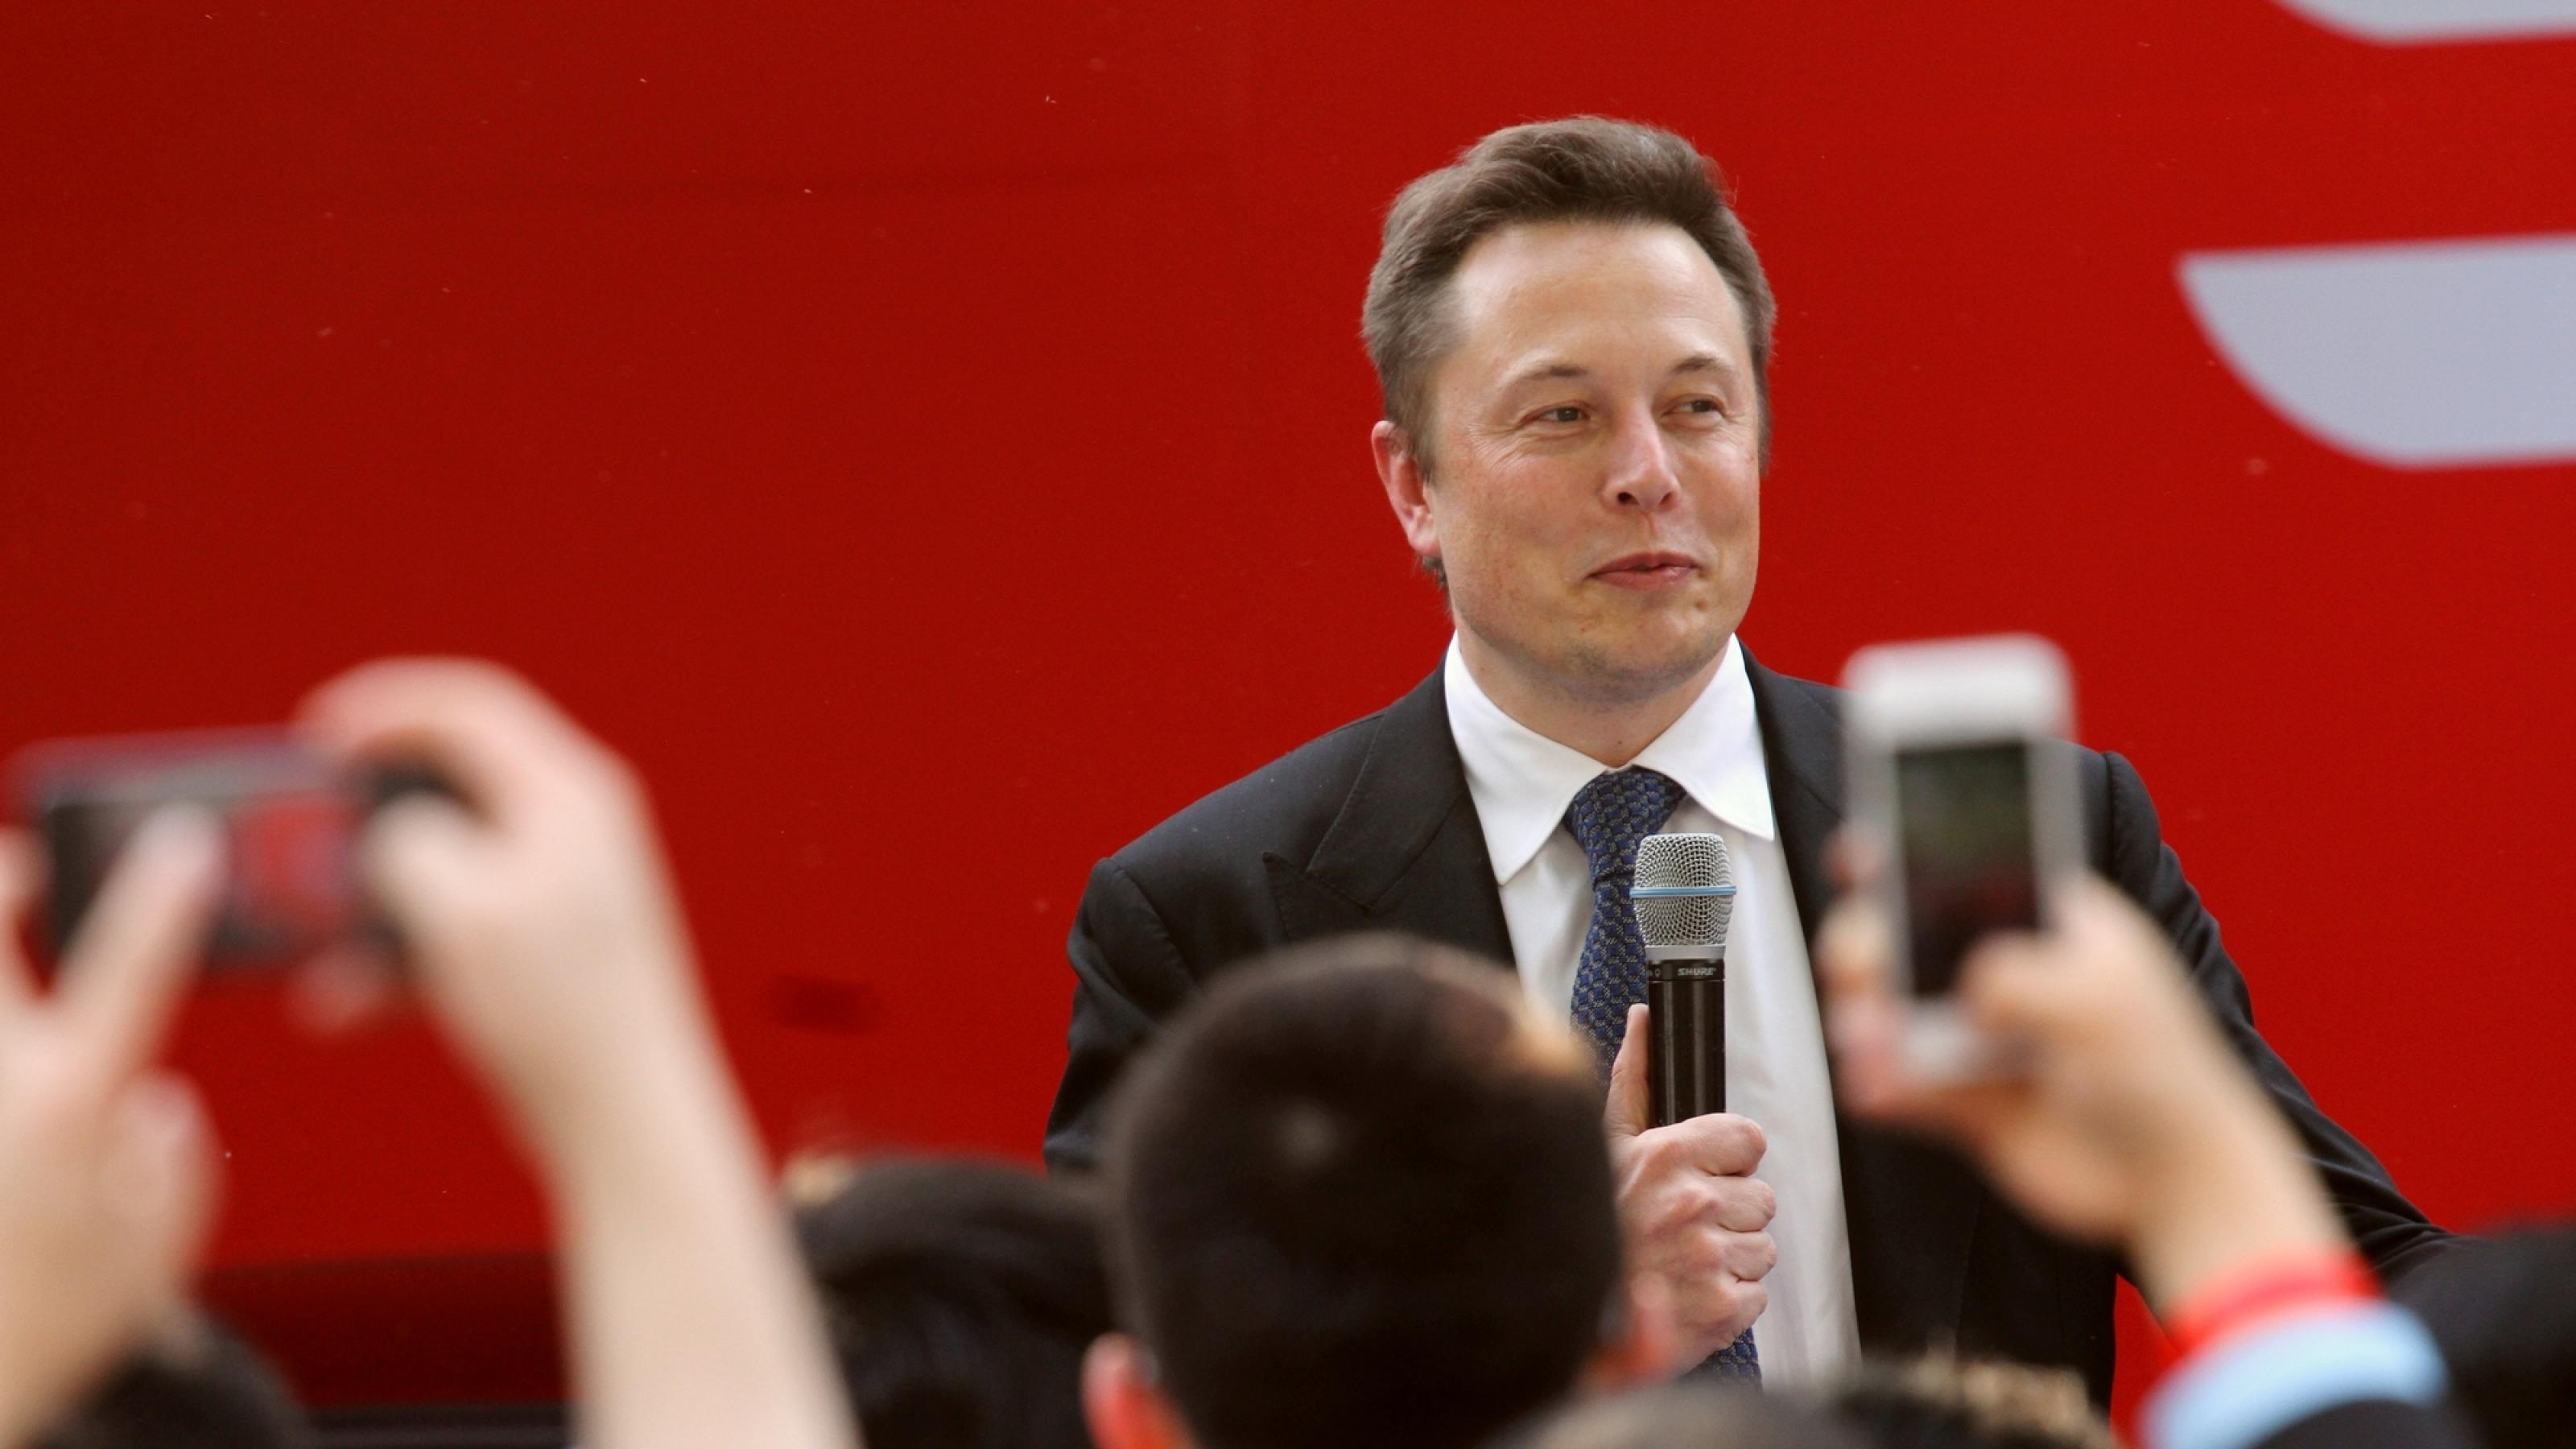 Elon Musk bei einer Rede in Peking, China. Der Unternehmer hat einen offenen Brief unterschrieben, der ein Moratorium für künstliche Intelligenz fordert.